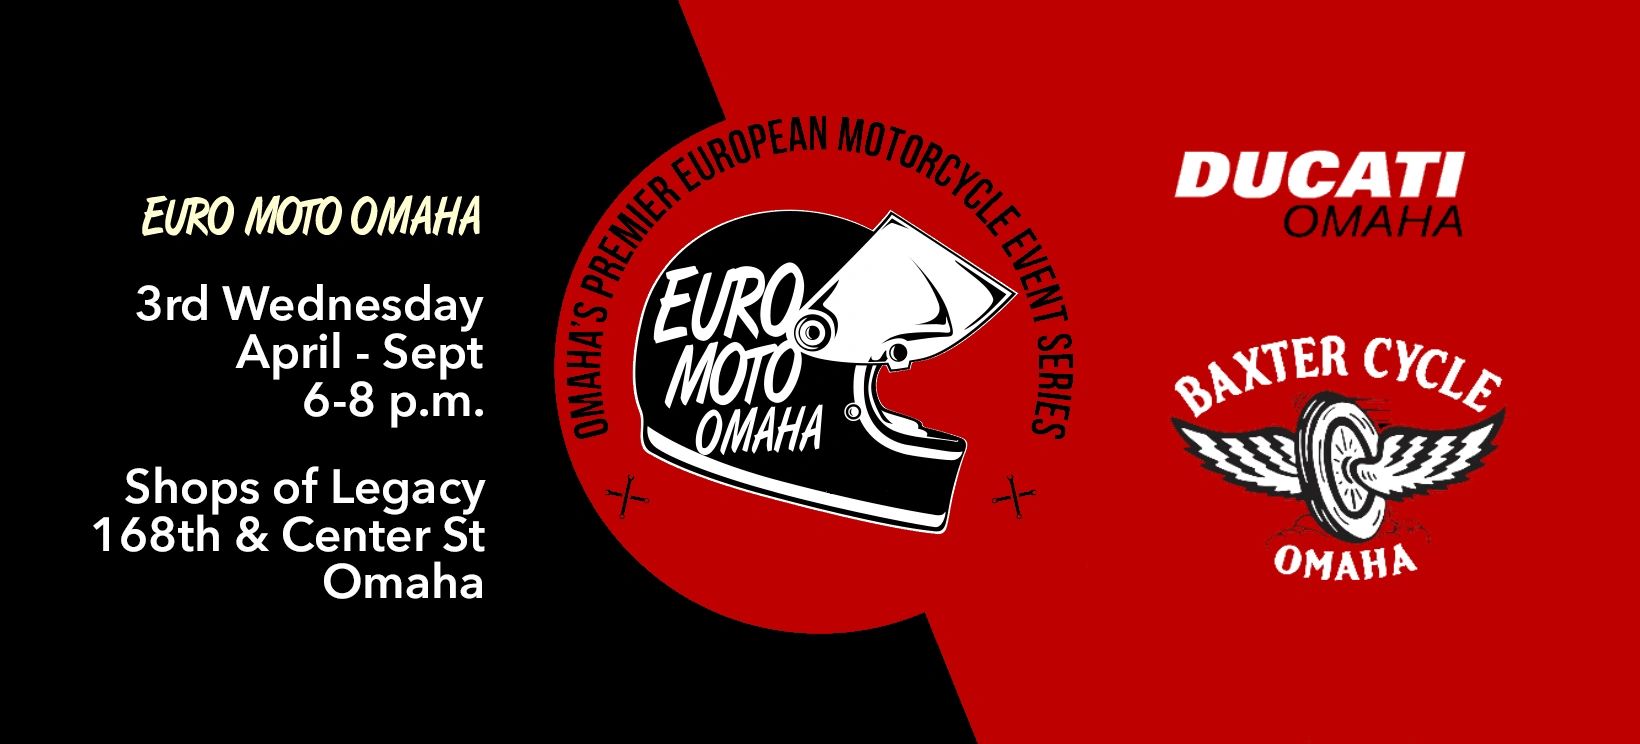 Euro Moto Omaha Home